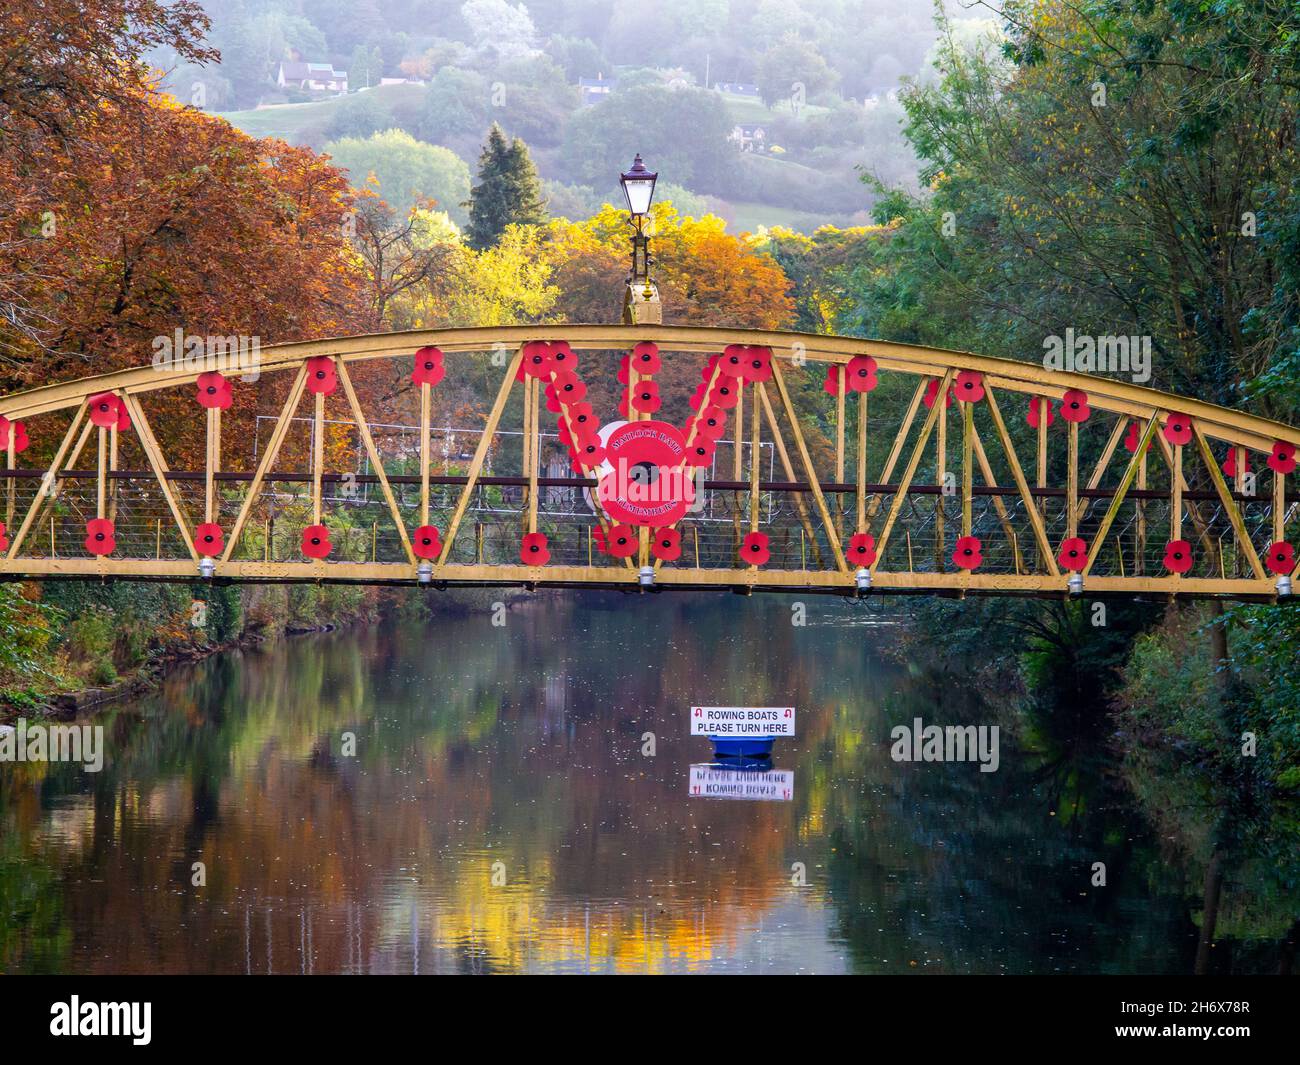 Les coquelicots du souvenir sur la rivière Jubilee Bridge Derwent dans le quartier de Matlock Bath Derbyshire Peak District Angleterre construit en 1887 pour le jubilé d'or de la reine Victoria. Banque D'Images